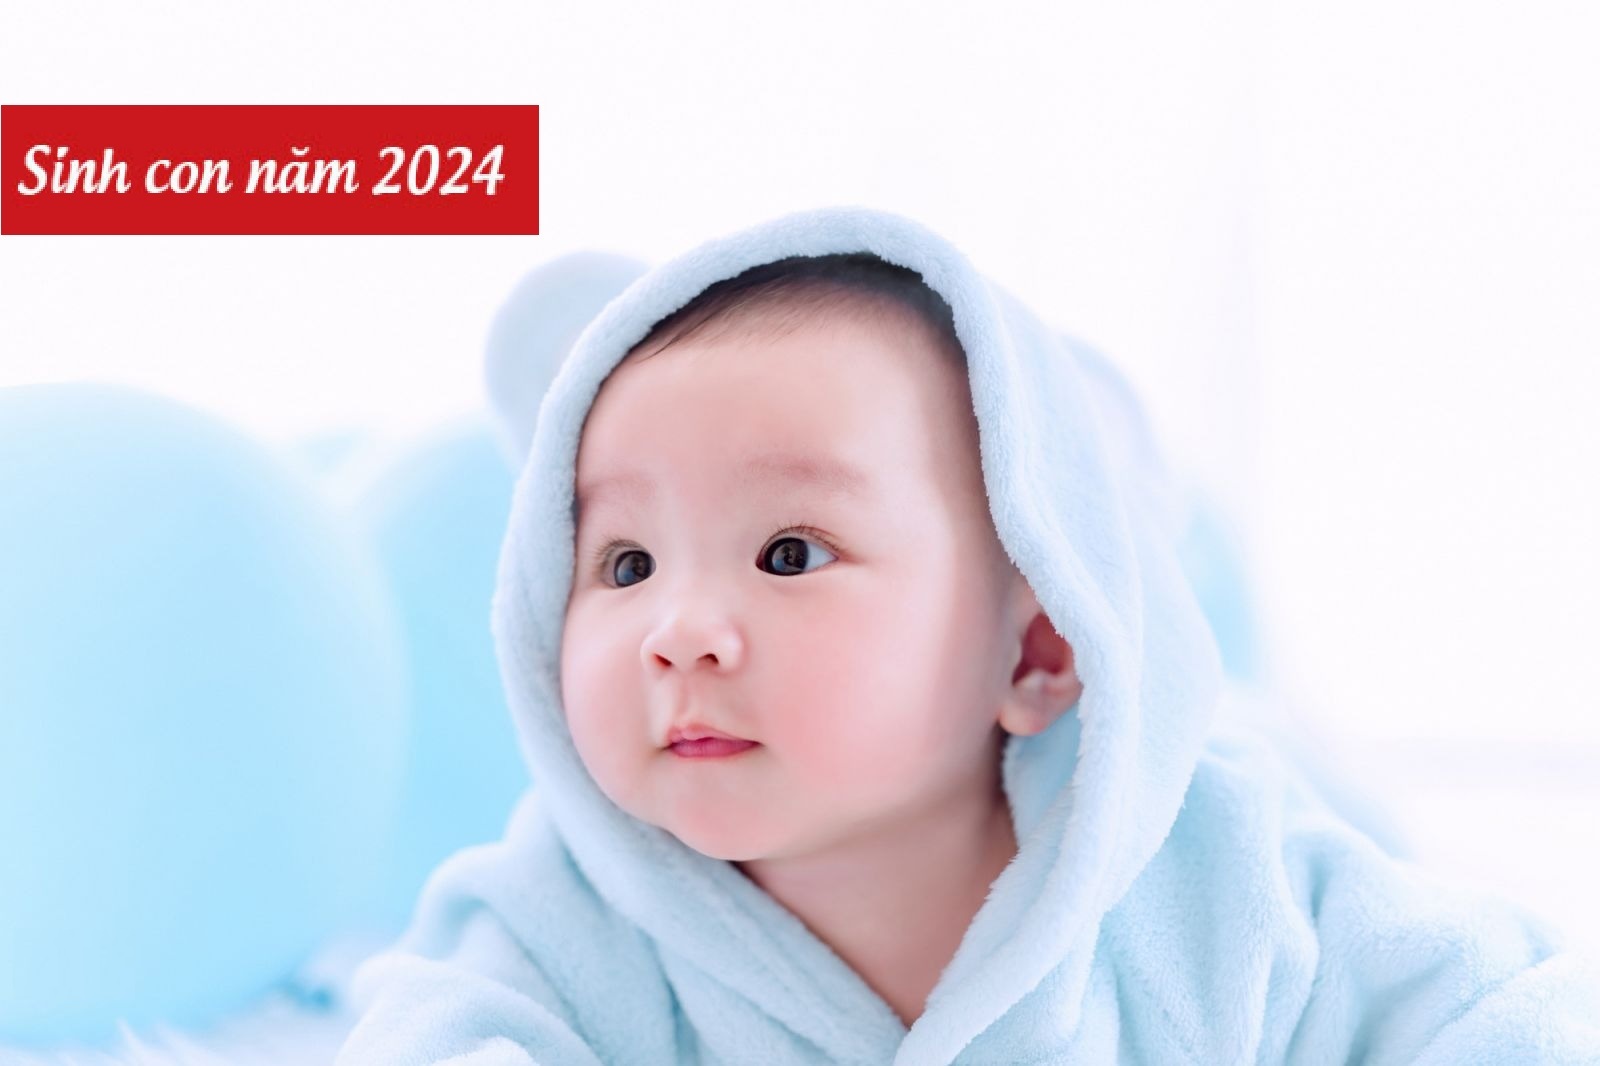 Tuổi Giáp Thân sinh con năm nào tốt thì 2024 là lựa chọn phù hợp